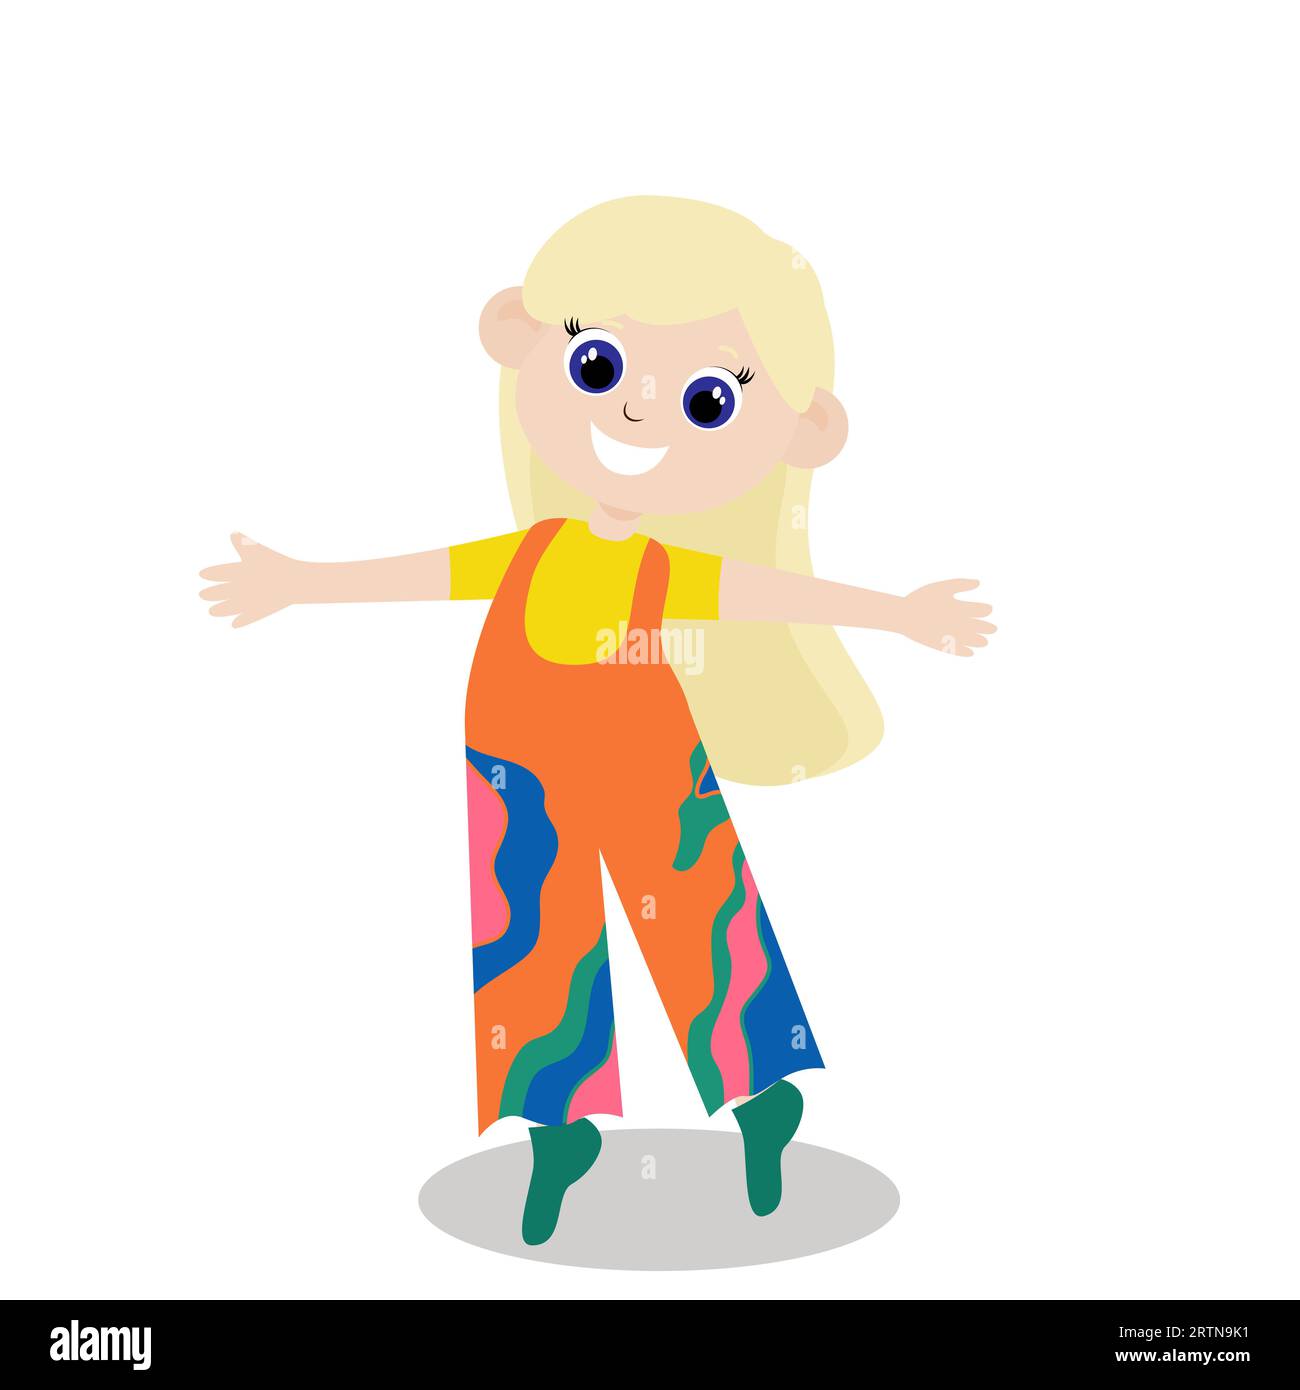 Ein Mädchen in einem breiten farbigen Jumpsuit freut sich und steht mit ausgestreckten Armen. Das Kind ist glücklich und modisch gekleidet. Charakterdesign. Stock Vektor